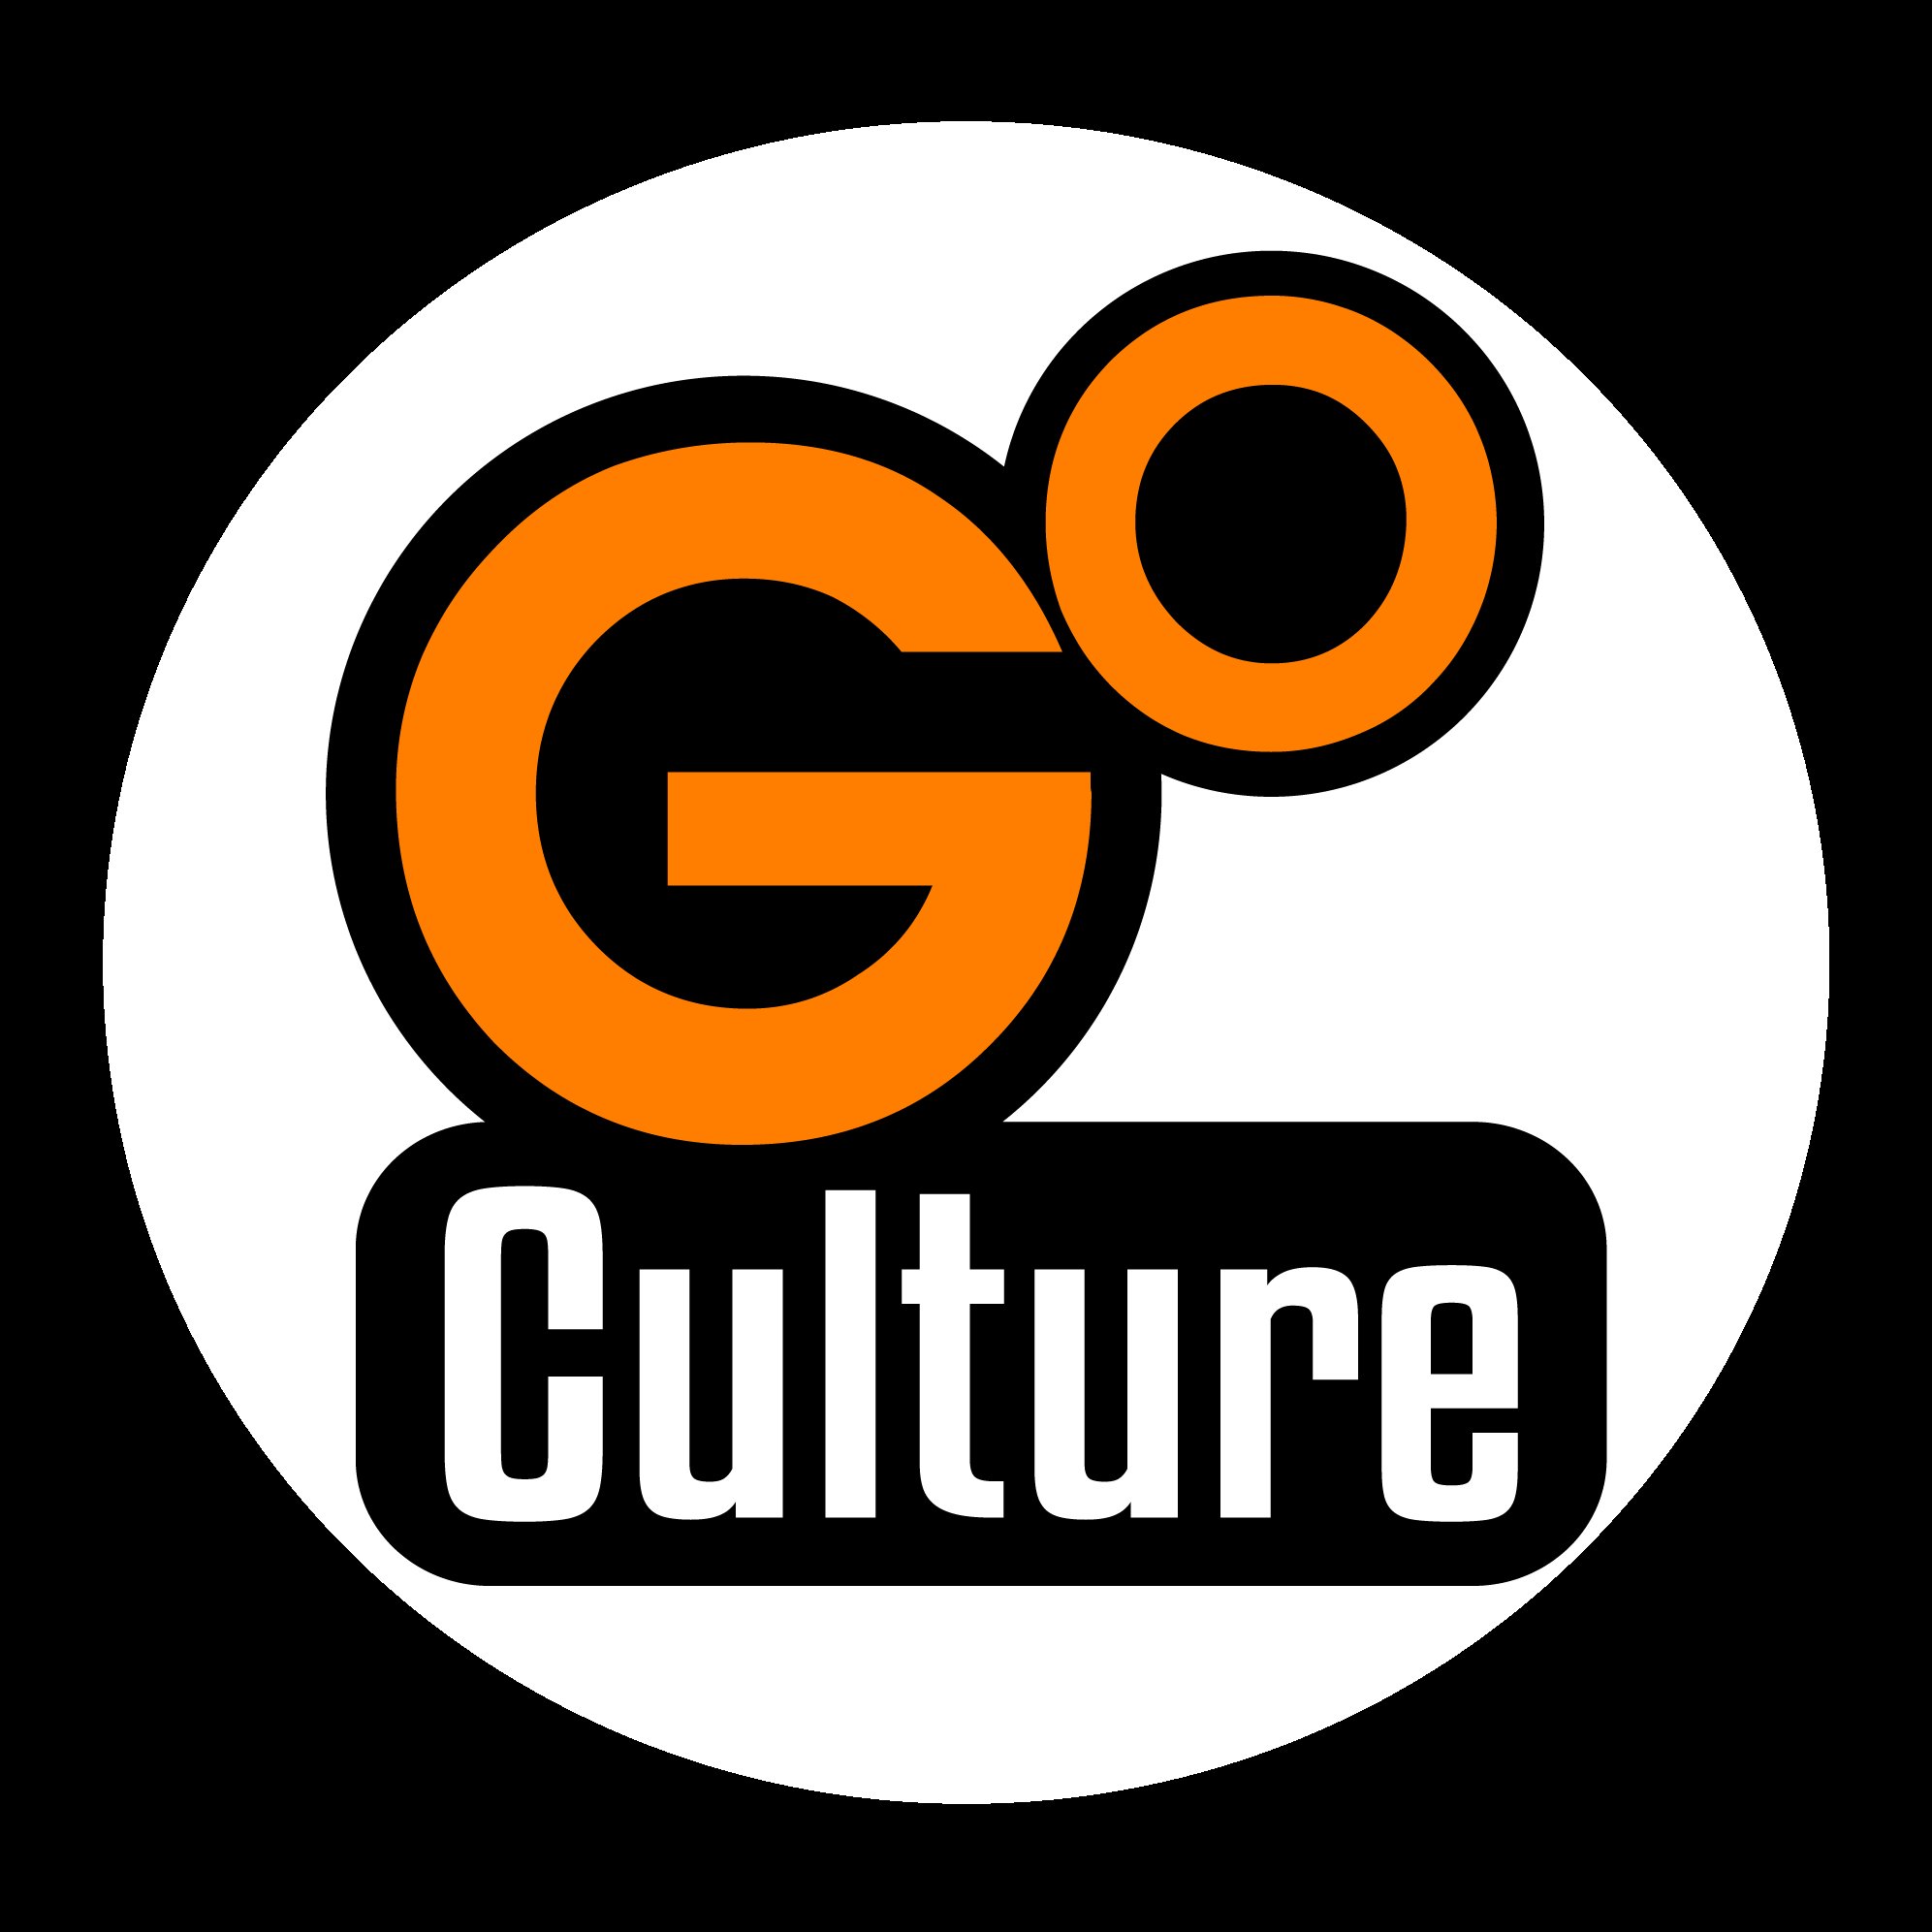 Go Culture nouvelle plateforme qui réunit des personnes qui  souhaitent vivre des expériences locales, originales et personnelles.